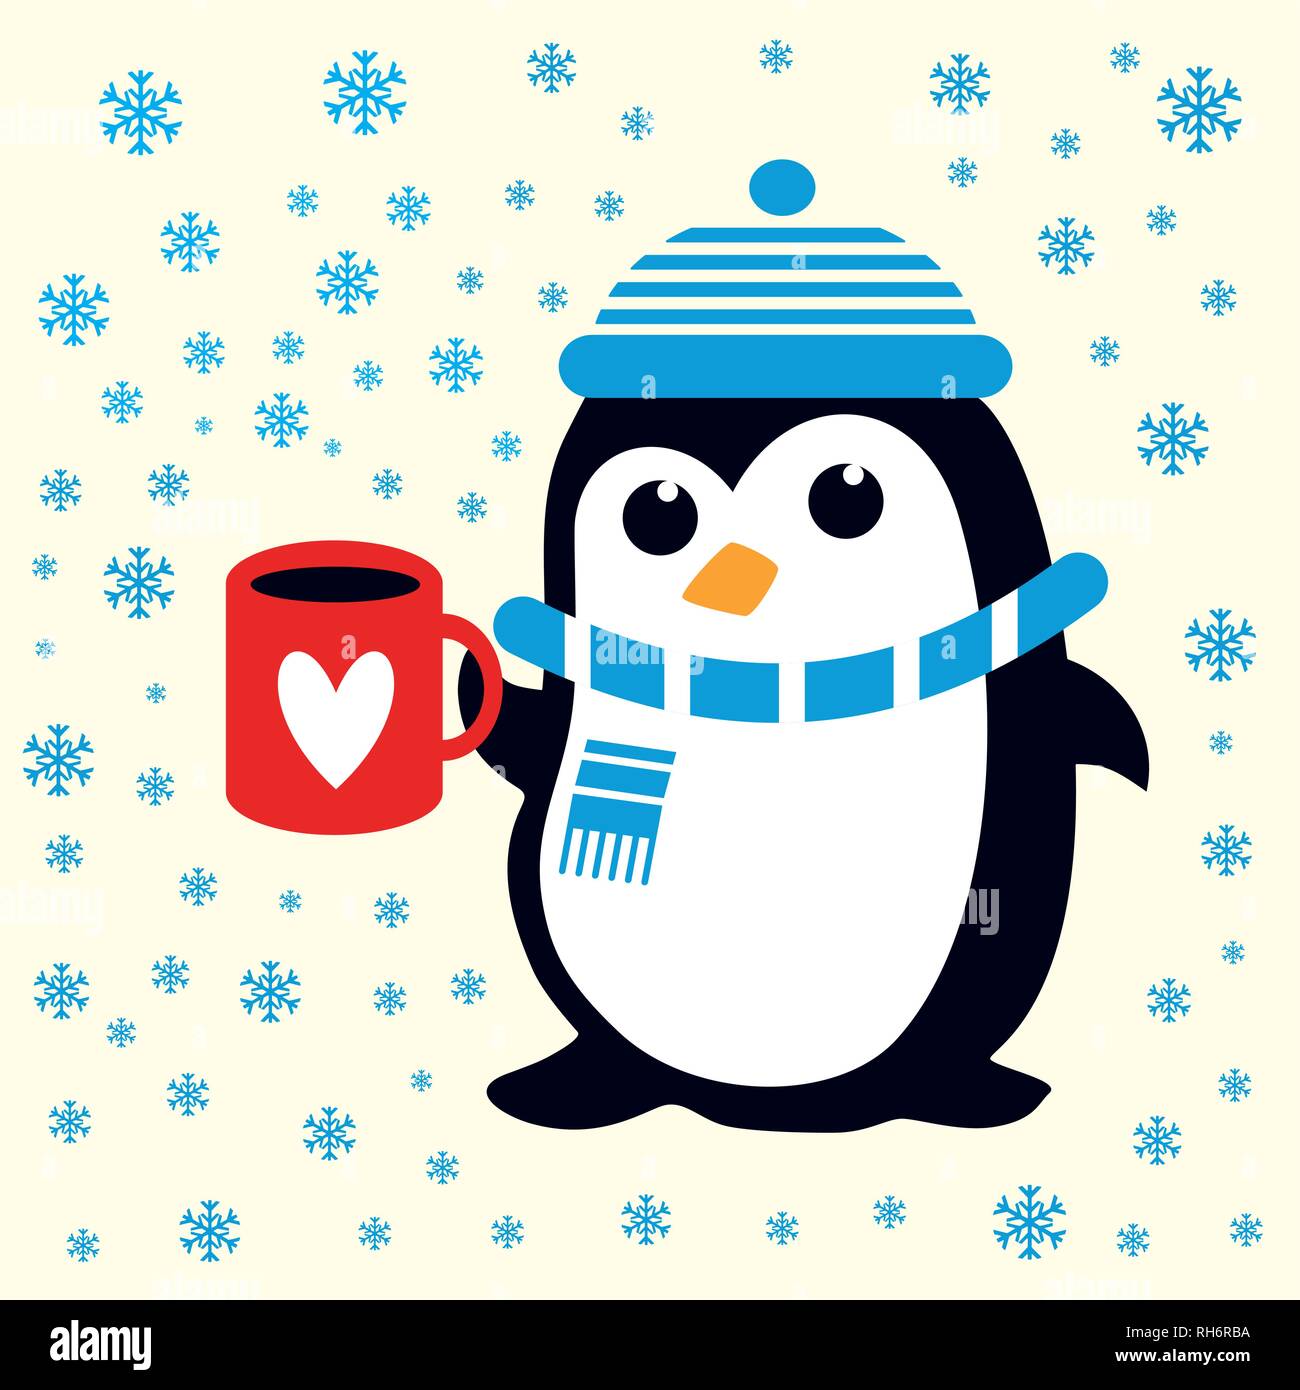 Funny cute Penguin in blauen Hut und Schal mit roter Schale mit Herz. Für Weihnachten Stoff, Tapeten, Geschenkverpackung. Stock Vektor